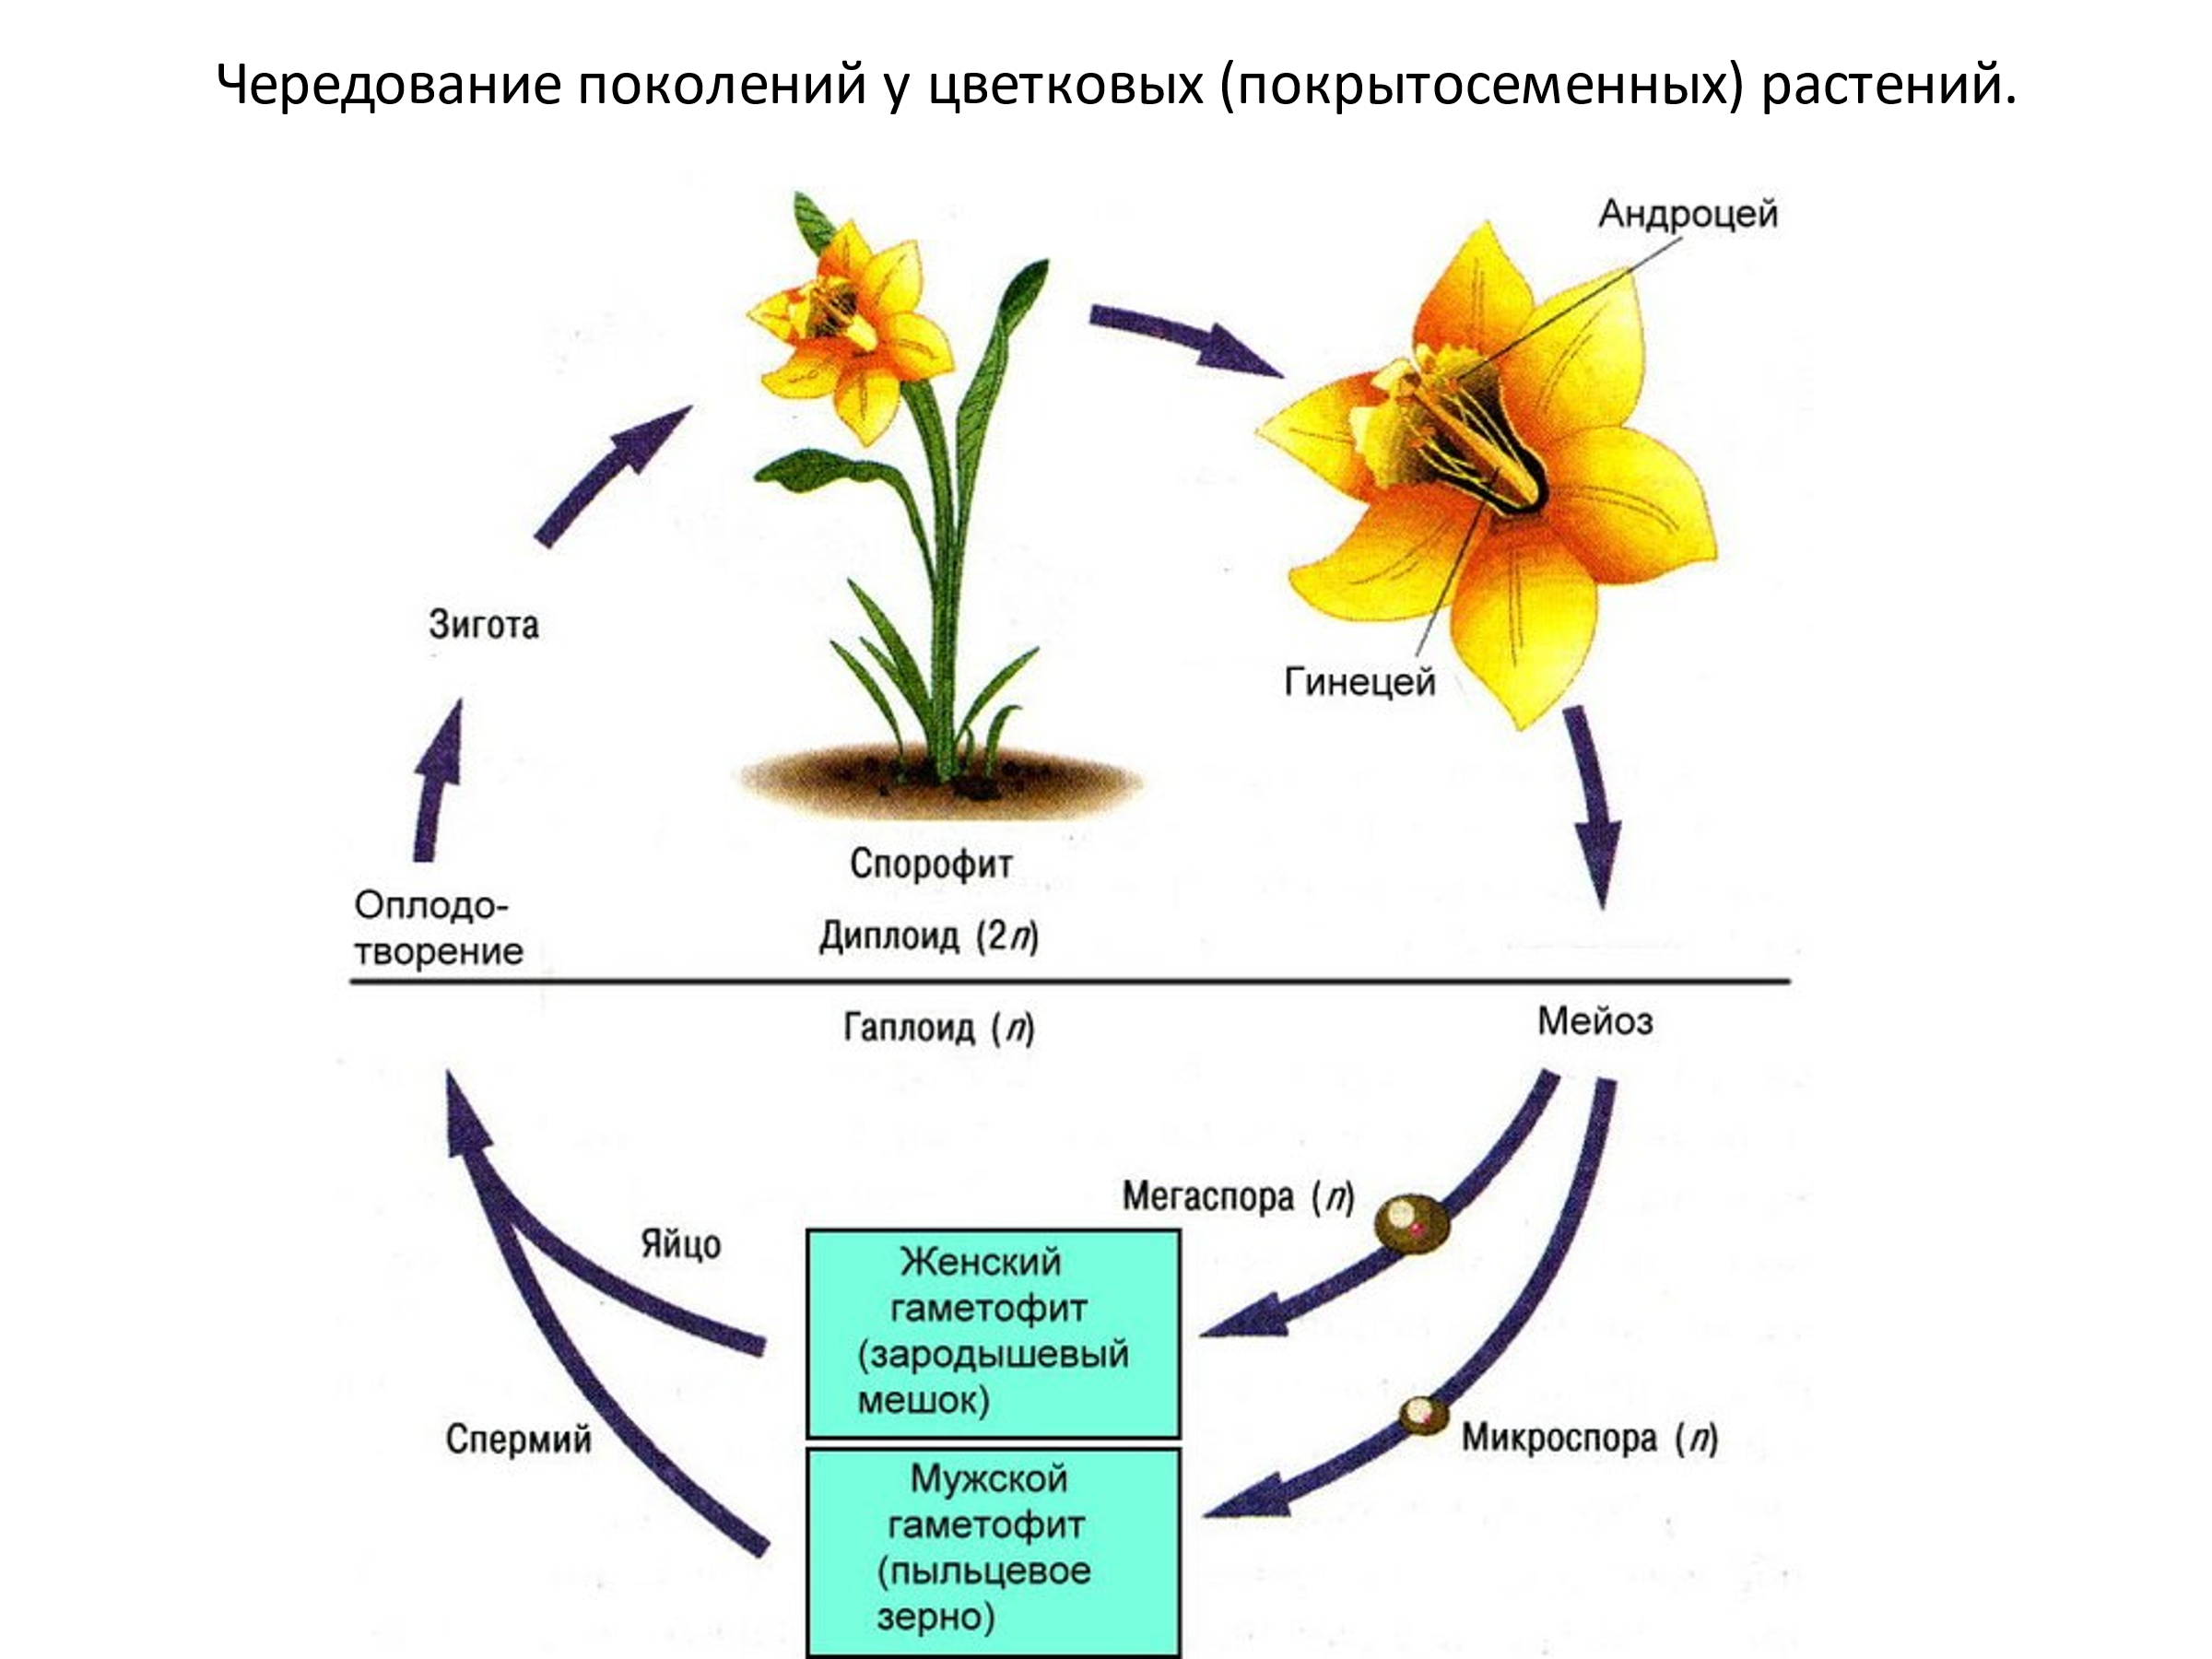 Стадии женского гаметофита. Жизненный цикл цветковых растений гаметофит. Стадии жизненного цикла цветковых растений. Гаметофит и спорофит у покрытосеменных растений. Этапы развития цветковых растений.